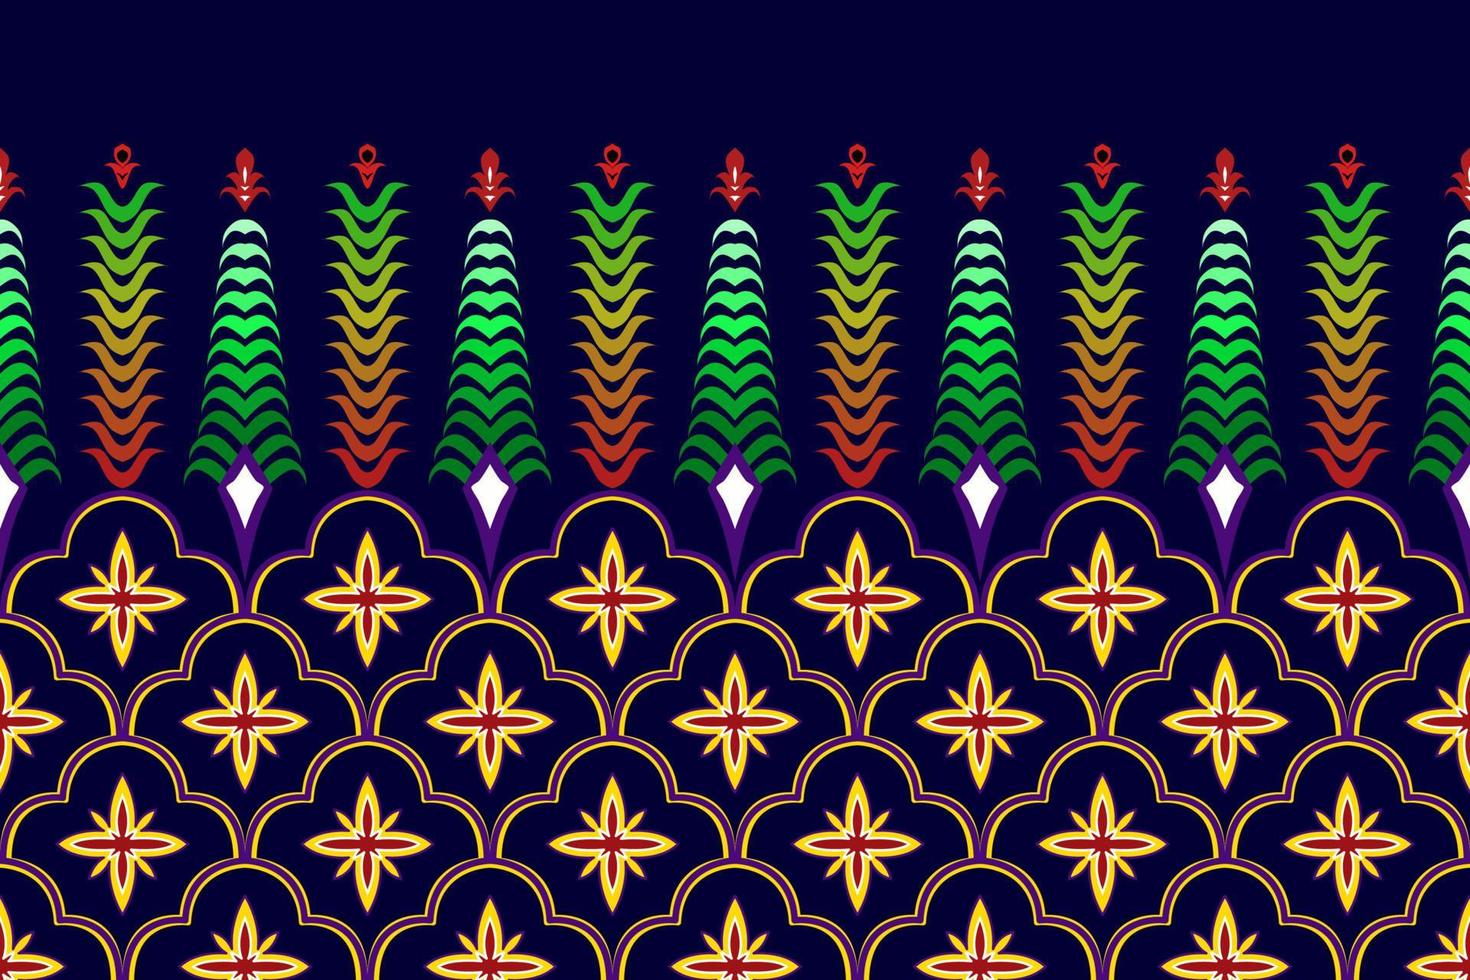 design de padrão sem emenda étnico marroquino ikat. tecido asteca tapete mandala ornamento nativo boho chevron têxtil decoração wallpaper. vetor de bordado tradicional indiano africano peru tribal